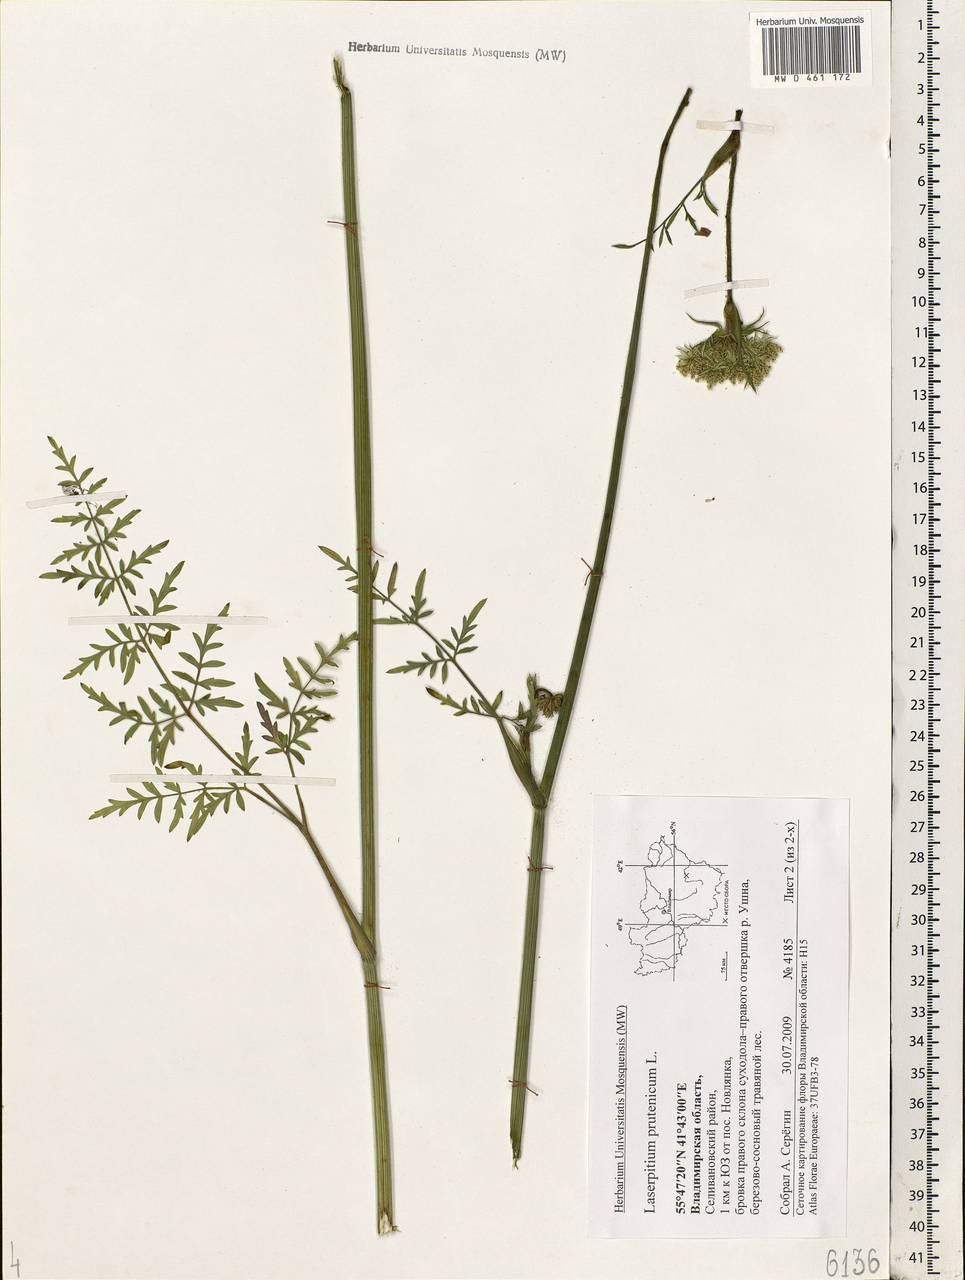 Silphiodaucus prutenicus subsp. prutenicus, Восточная Европа, Центральный район (E4) (Россия)